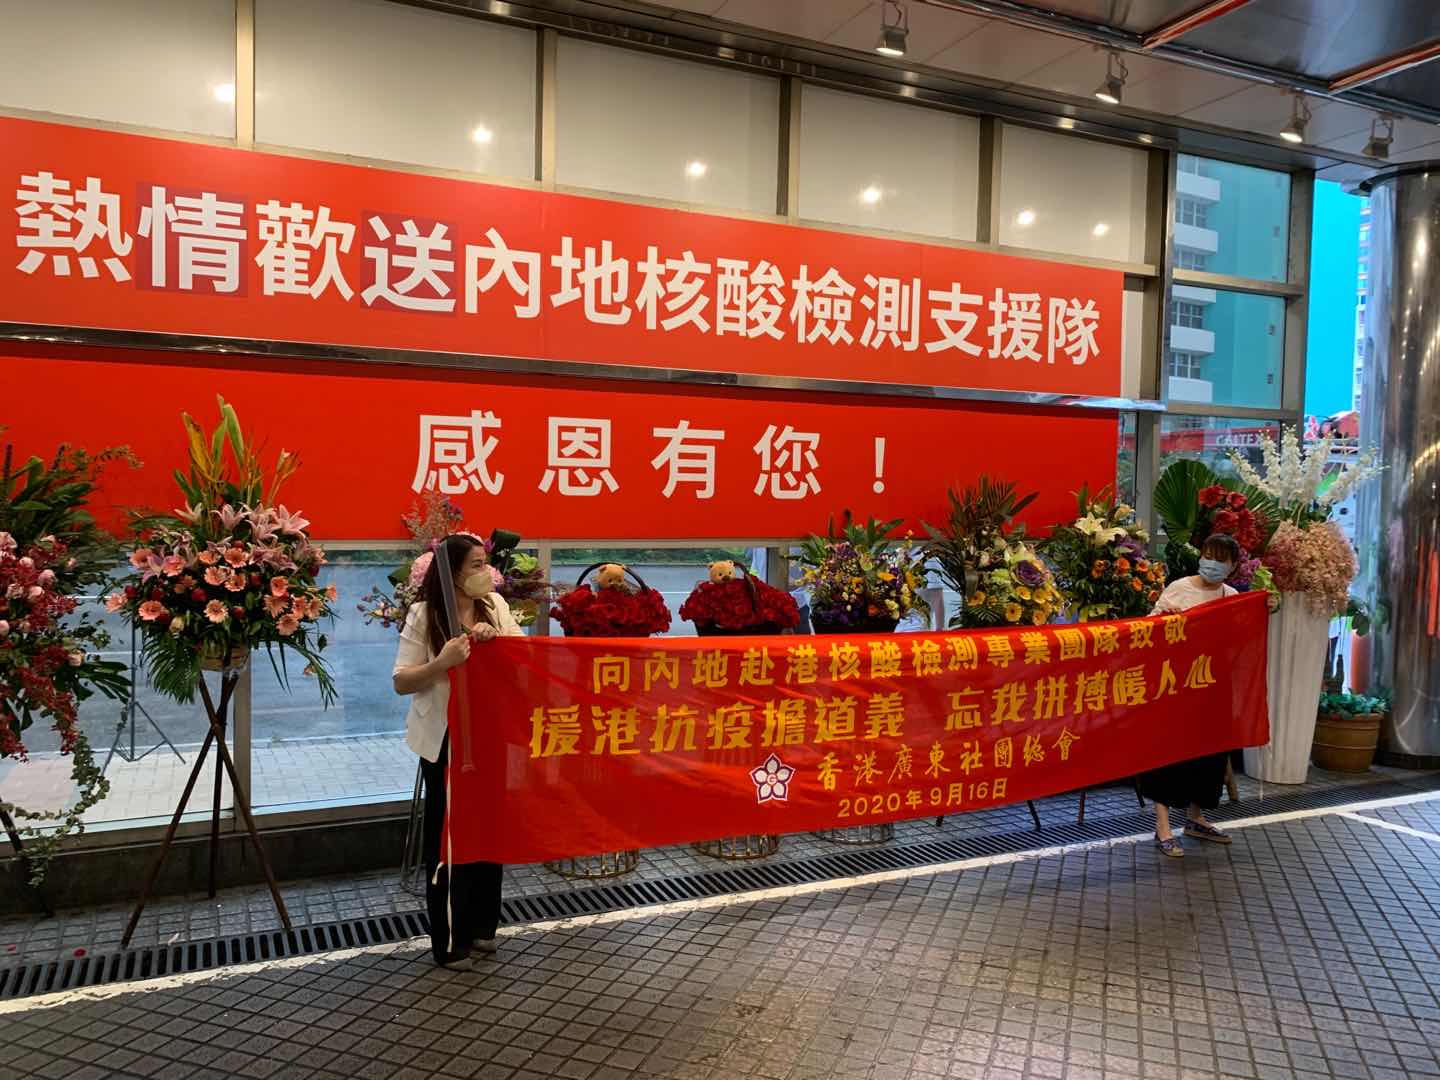 香港廣東社團聯會拉起橫幅感謝支援隊助港抗疫。